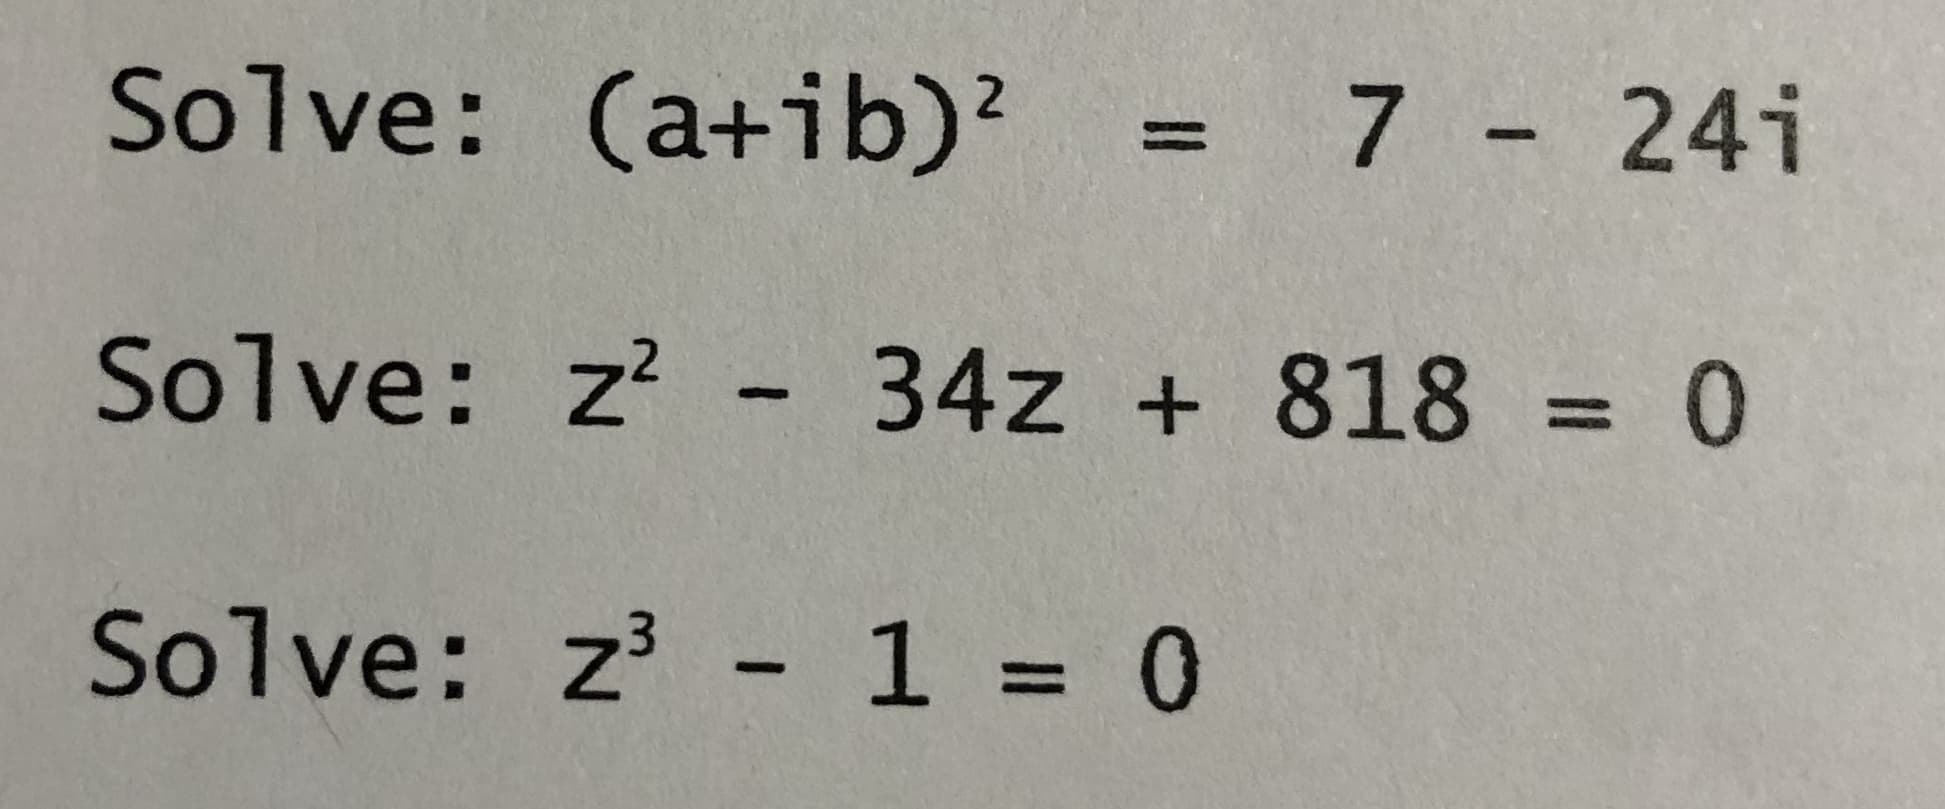 Solve: (a+ib)?
= 7 24i
2.
%3D
|
